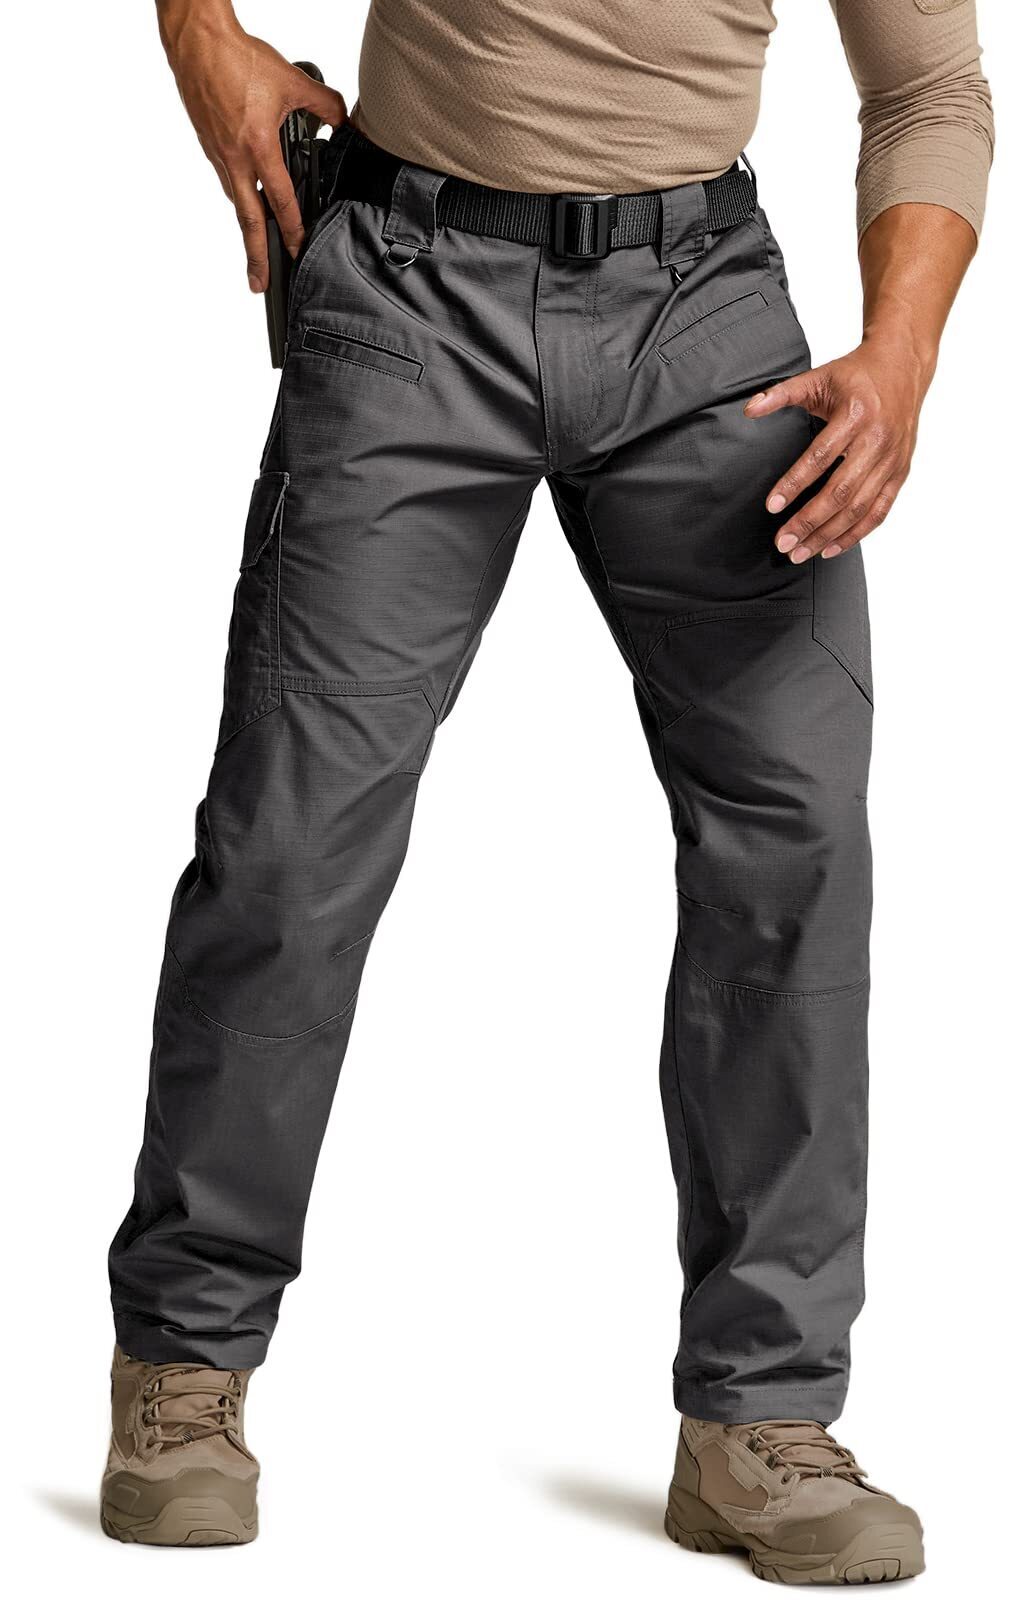 Men's Tactical Pants, Water Resistant Ripstop Cargo Pants - Tenrites